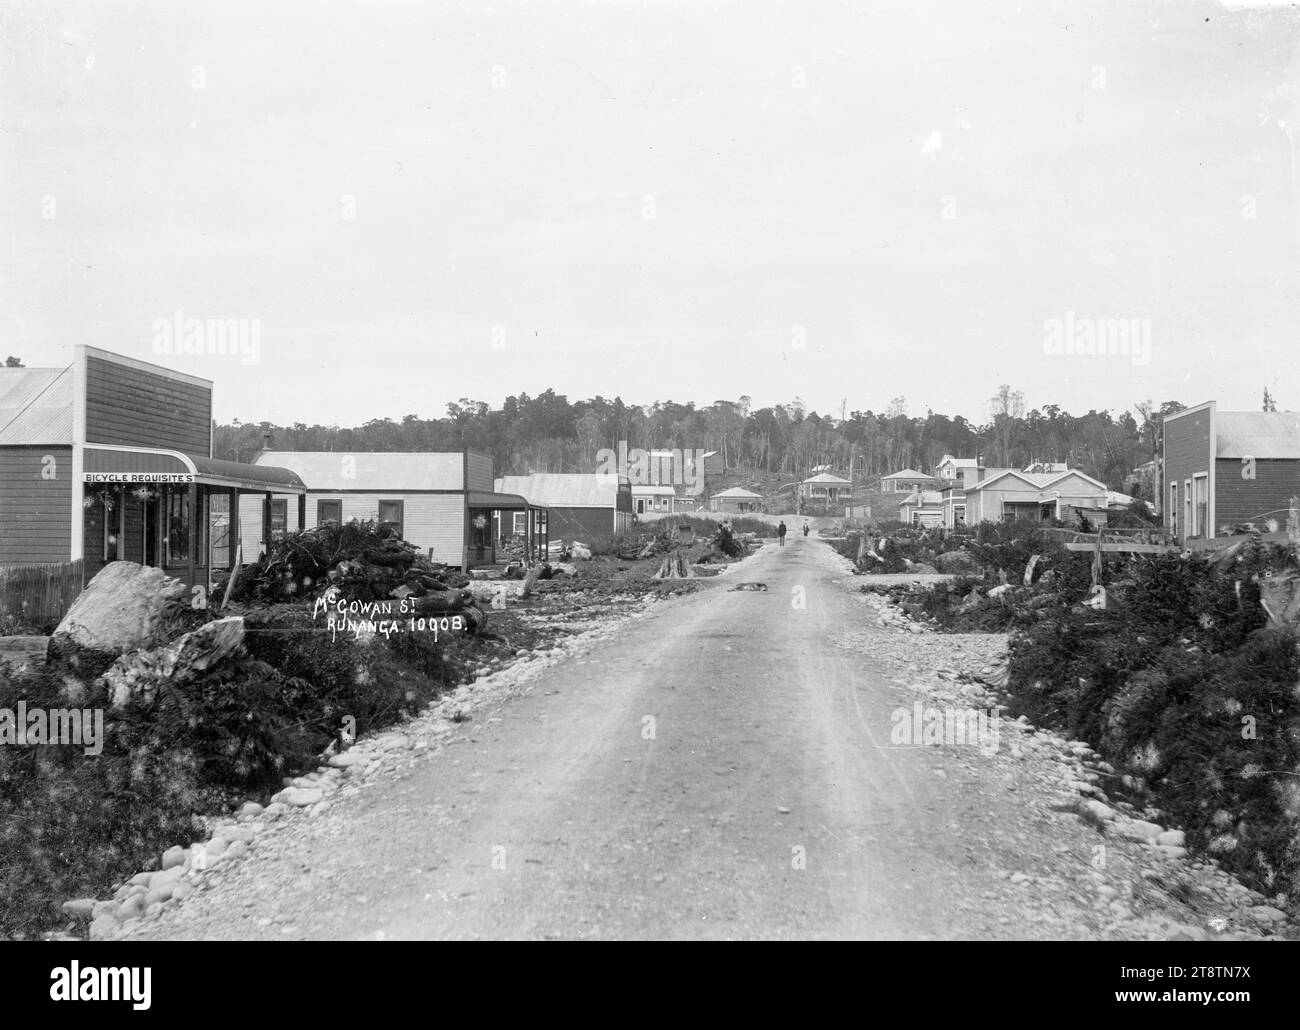 McGowan Street, Runanga, Vista di McGowan Street, Runanga, guardando a sud con Seddon Terrace alla fine, con un negozio che vende "articoli per biciclette" al centro a sinistra. P tra 1905 e 1912 Foto Stock